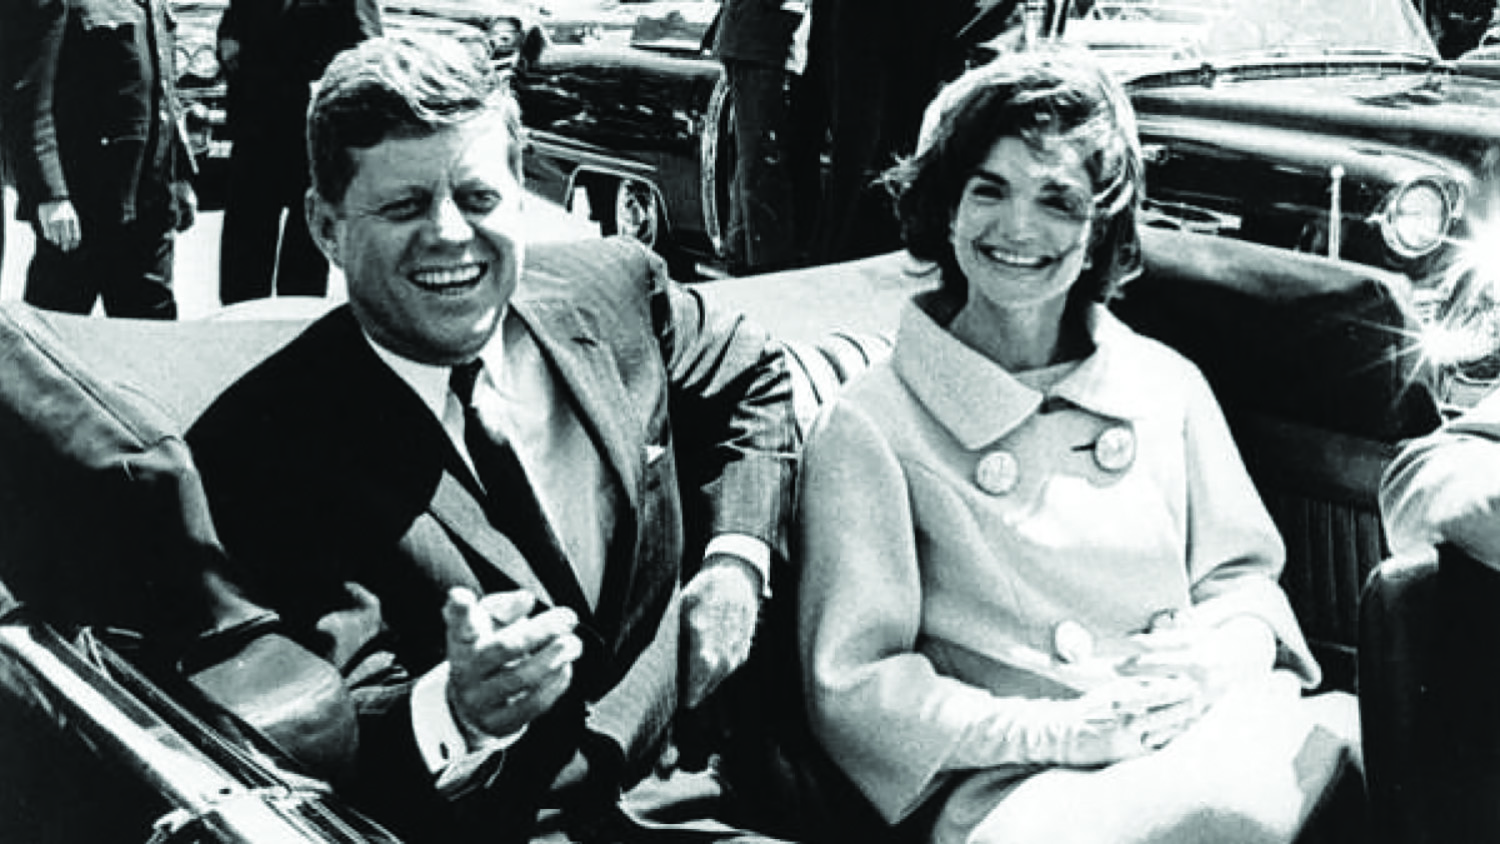 Las incógnitas que se esconden tras el magnicidio de Kennedy